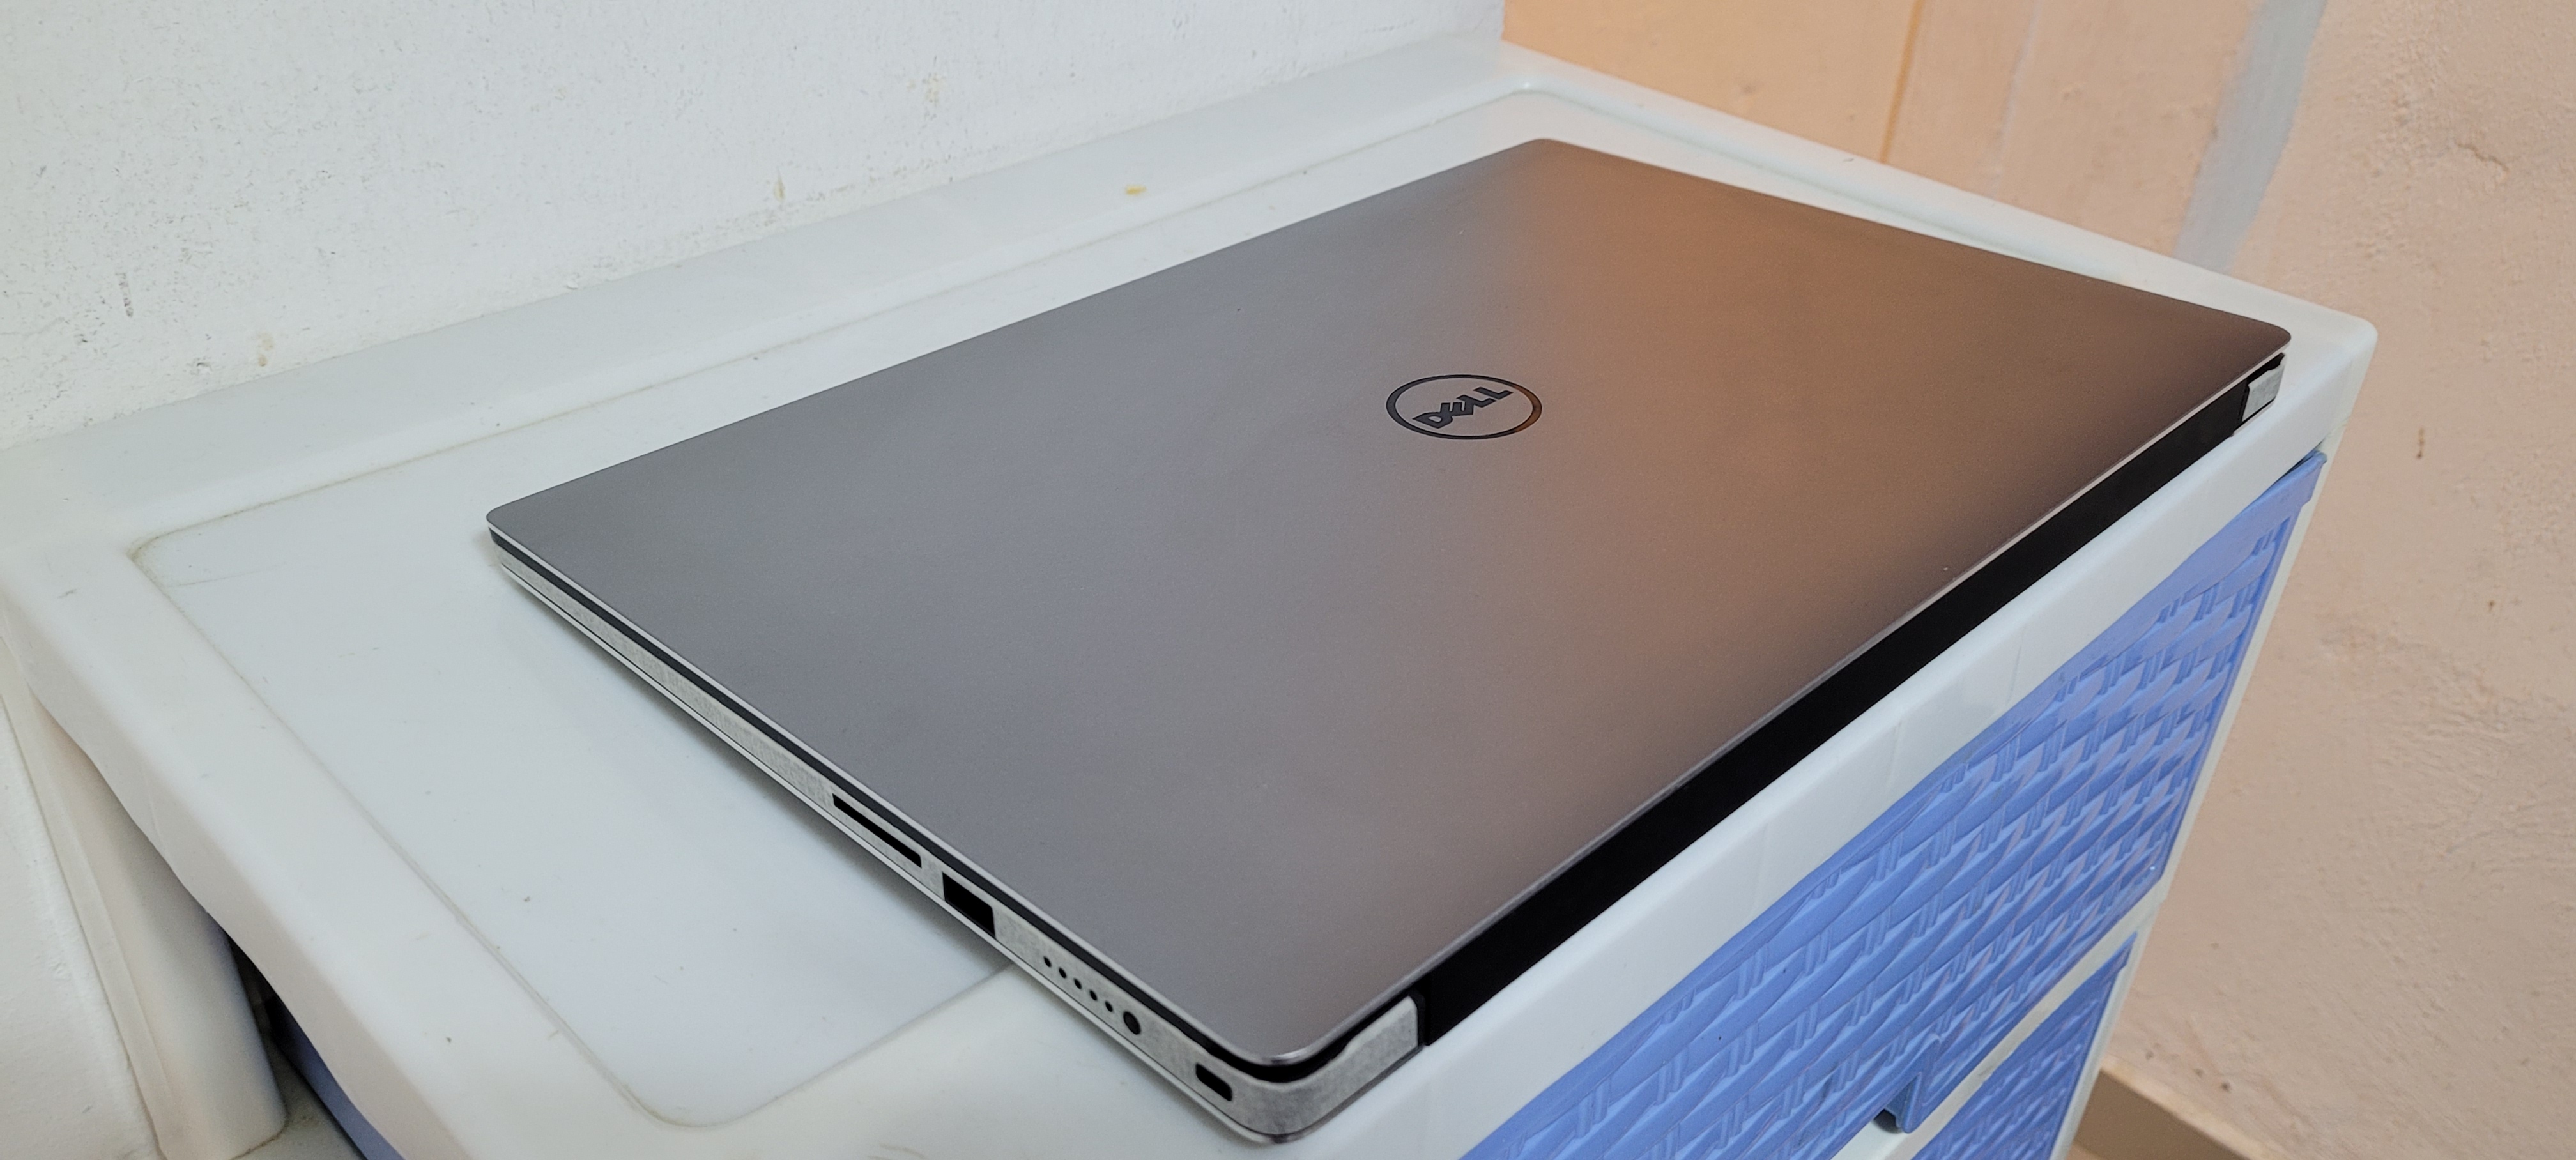 computadoras y laptops - Laptop Dell xps 15 Pulg Core i7 7ma Gen Ram 16gb DDR4 Nvidea Gtx 1050 4gb New 2